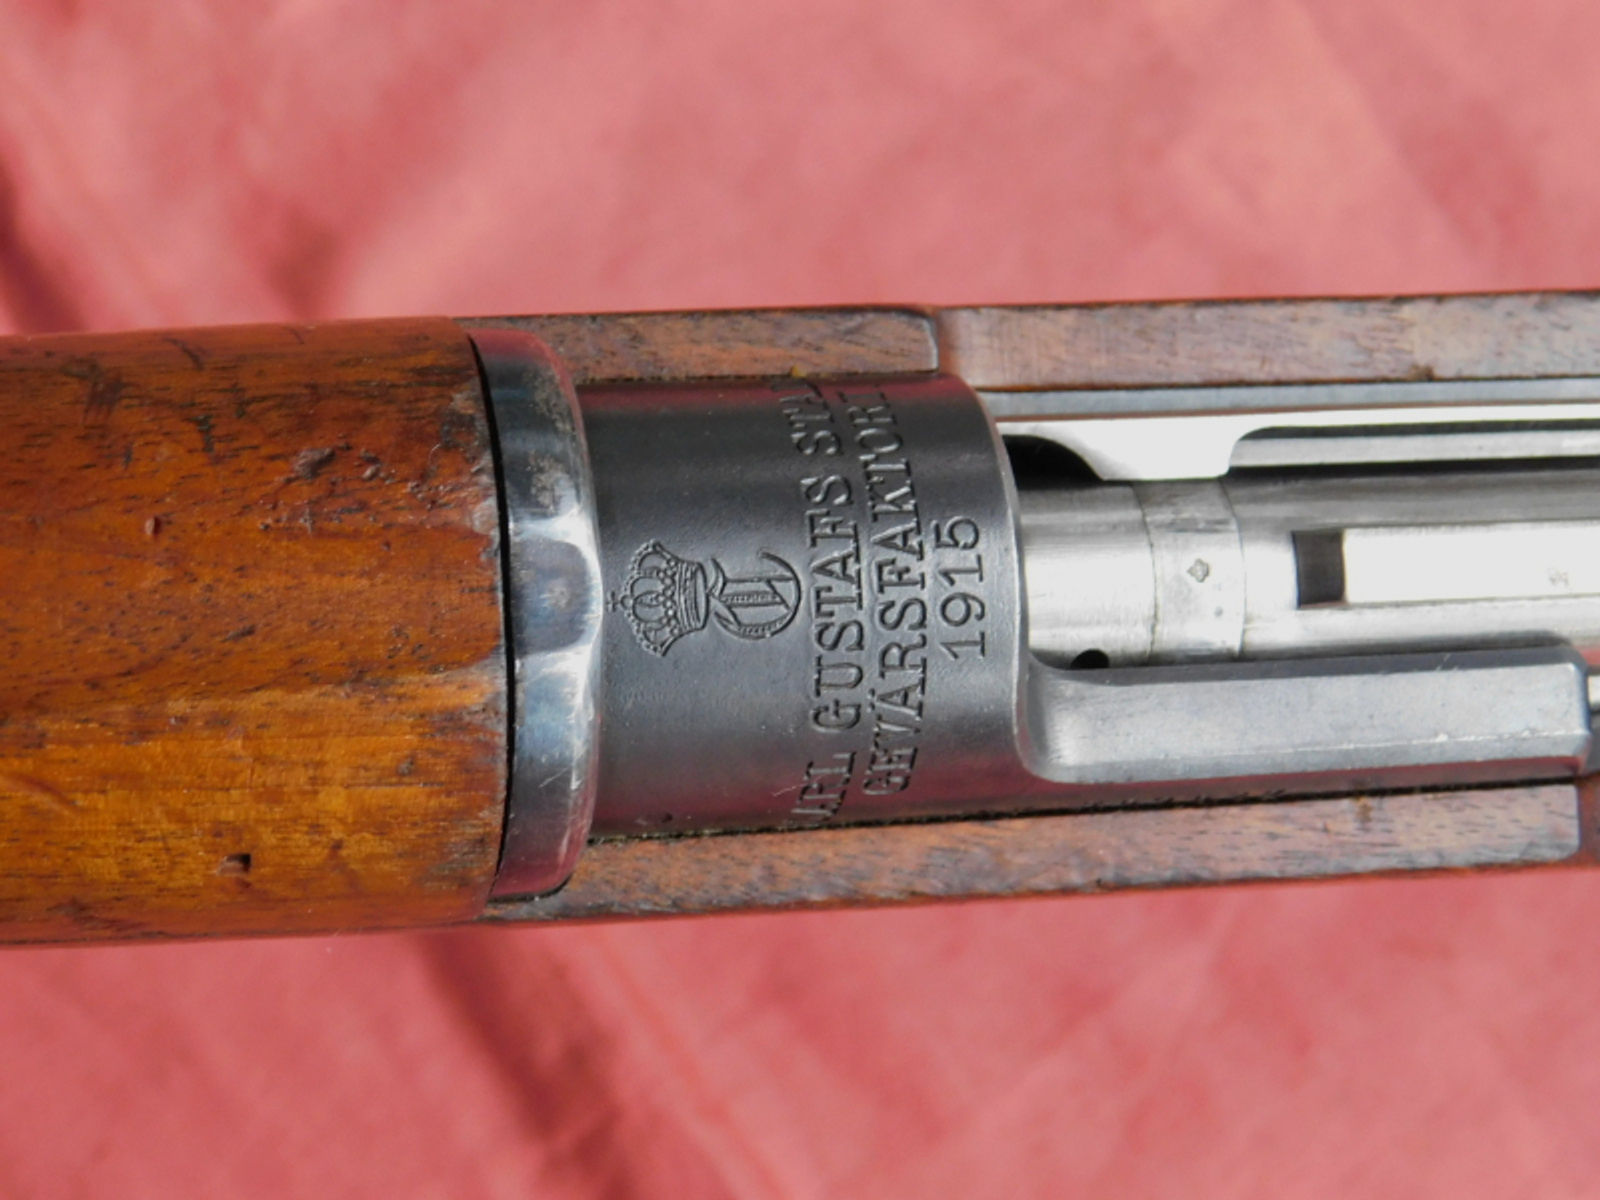 Carl Gustav M96 1915 Kal. 6,5x55 Schweden Mauser